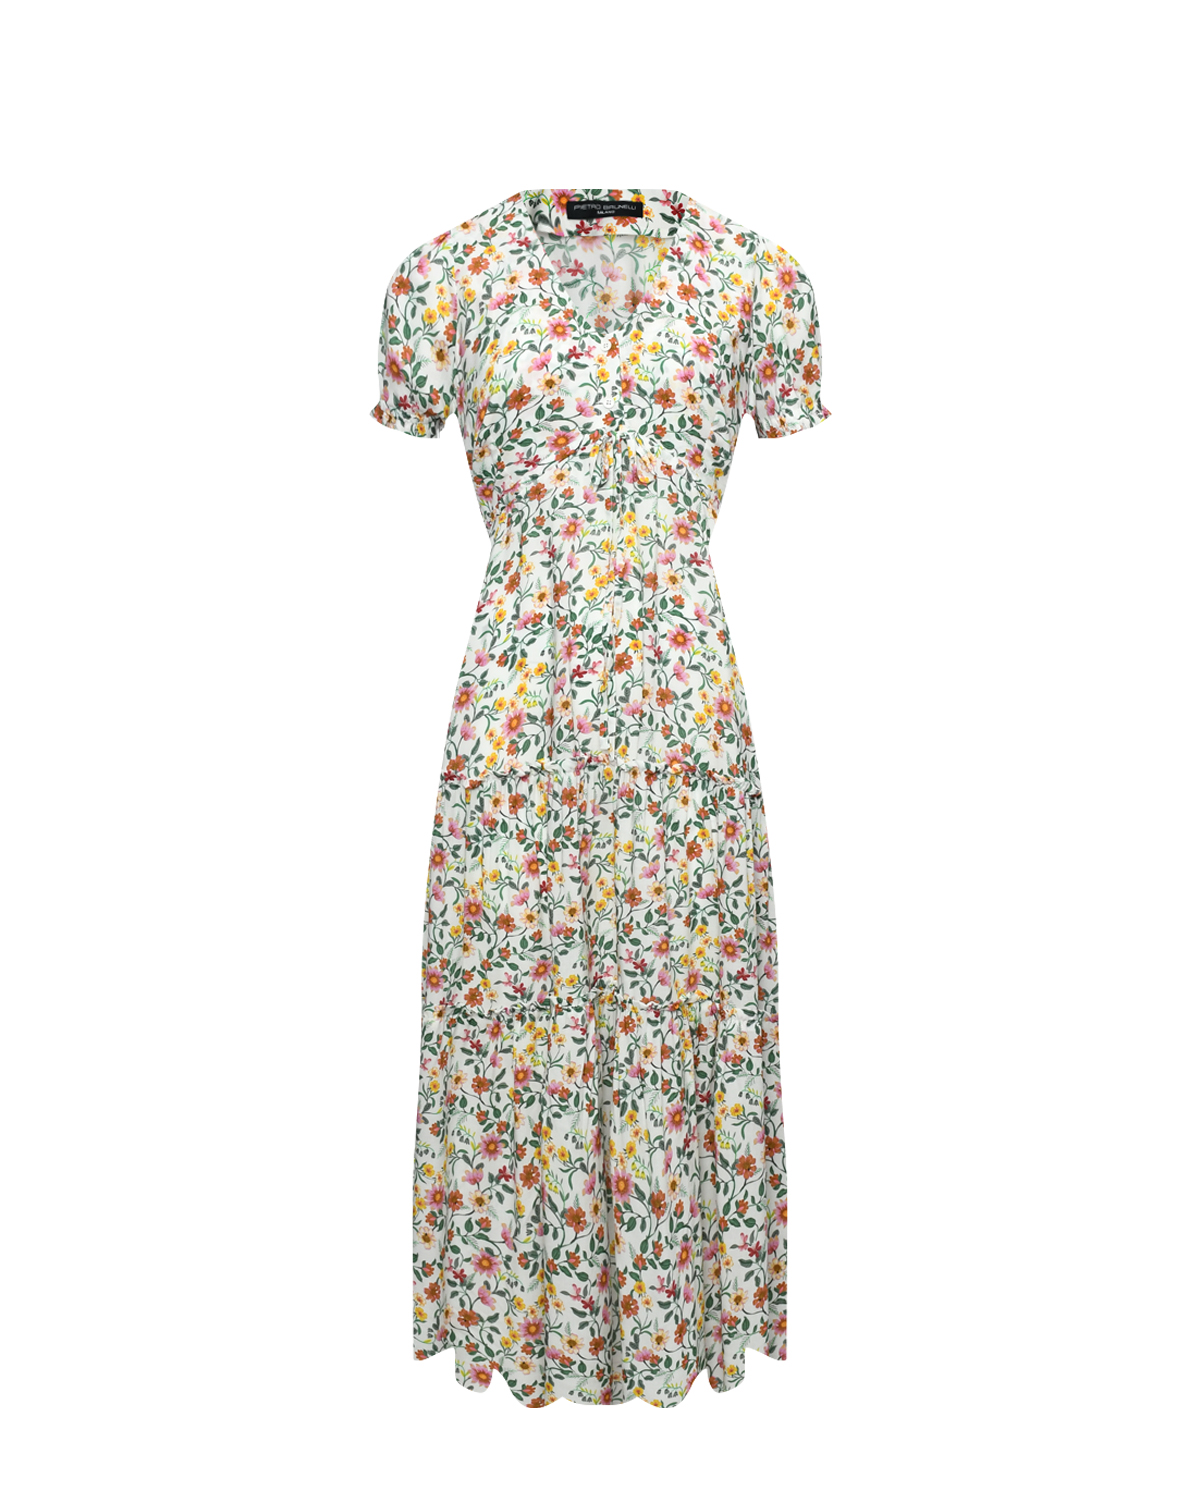 Платье BELLA в мелкий цветочный принт, белое Pietro Brunelli, размер 44 - фото 1